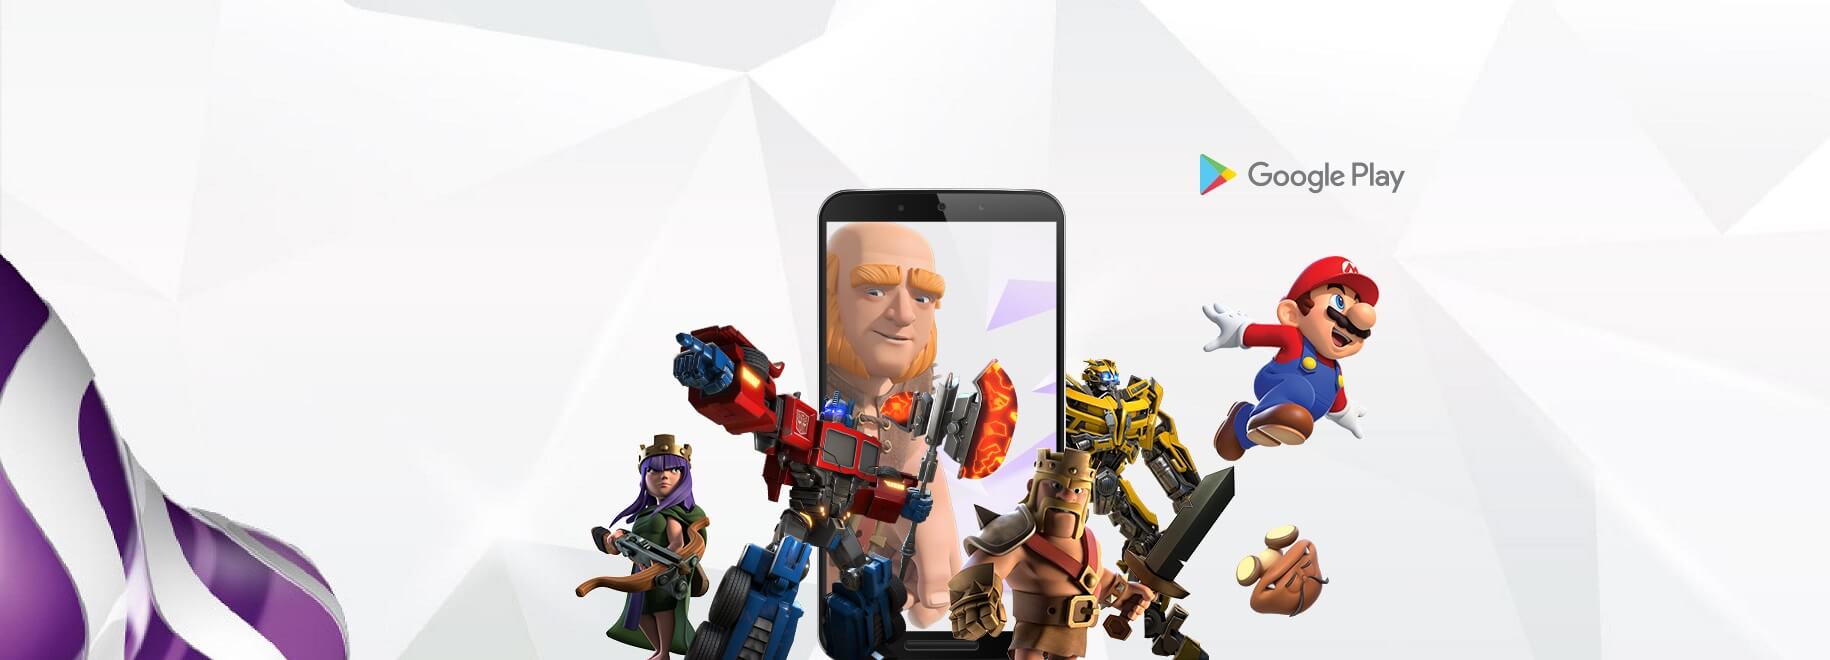 Playak PLN 20 ematen du Android joko eta aplikazioetarako
